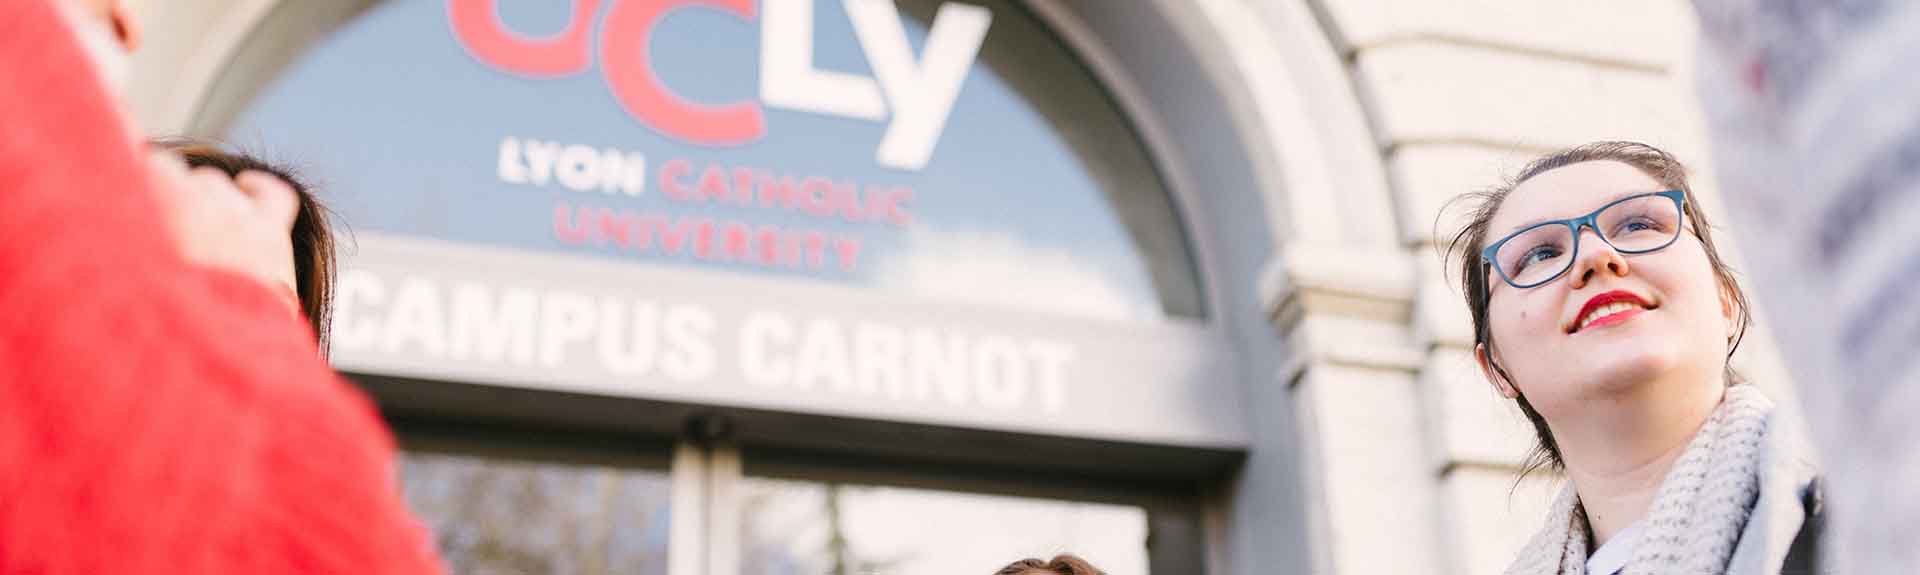 Les formations et les parcours d'études de l'Université Catholique de Lyon